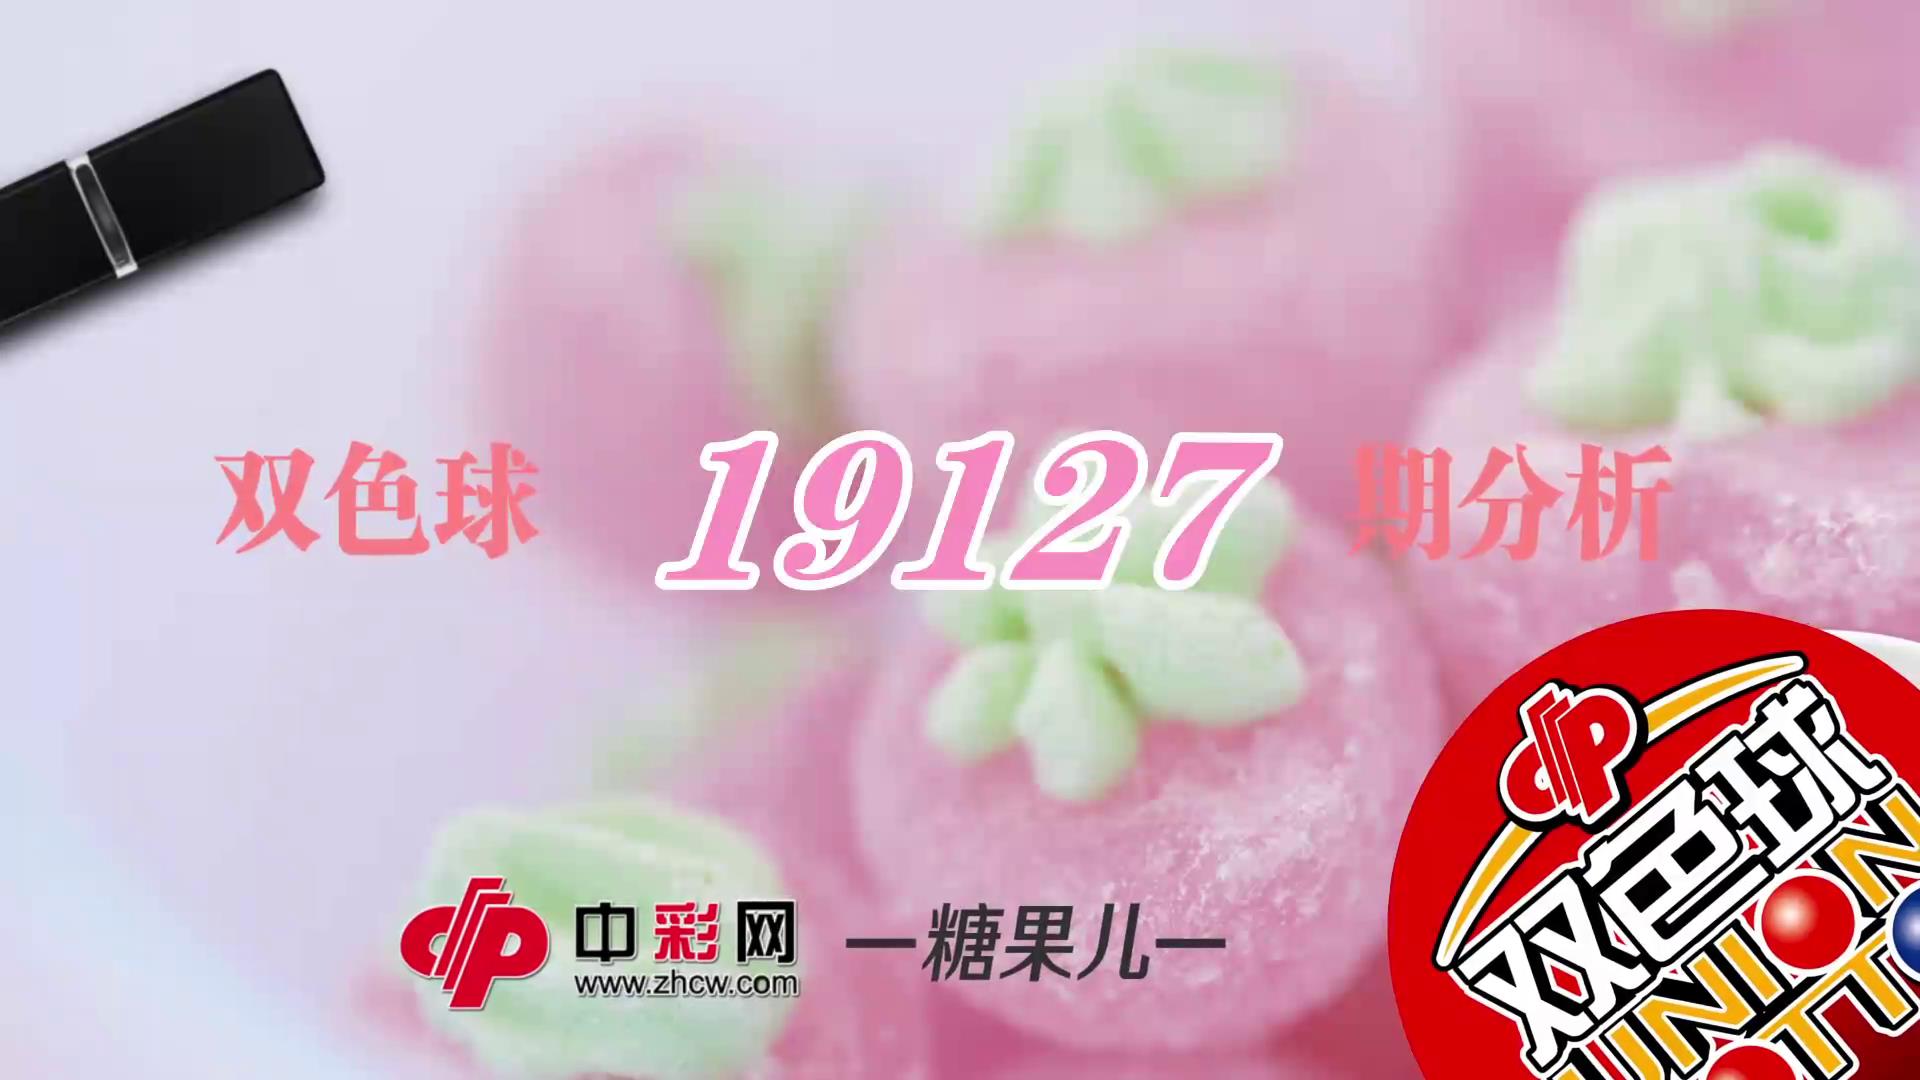 【中彩视频】糖果儿双色球第19127期